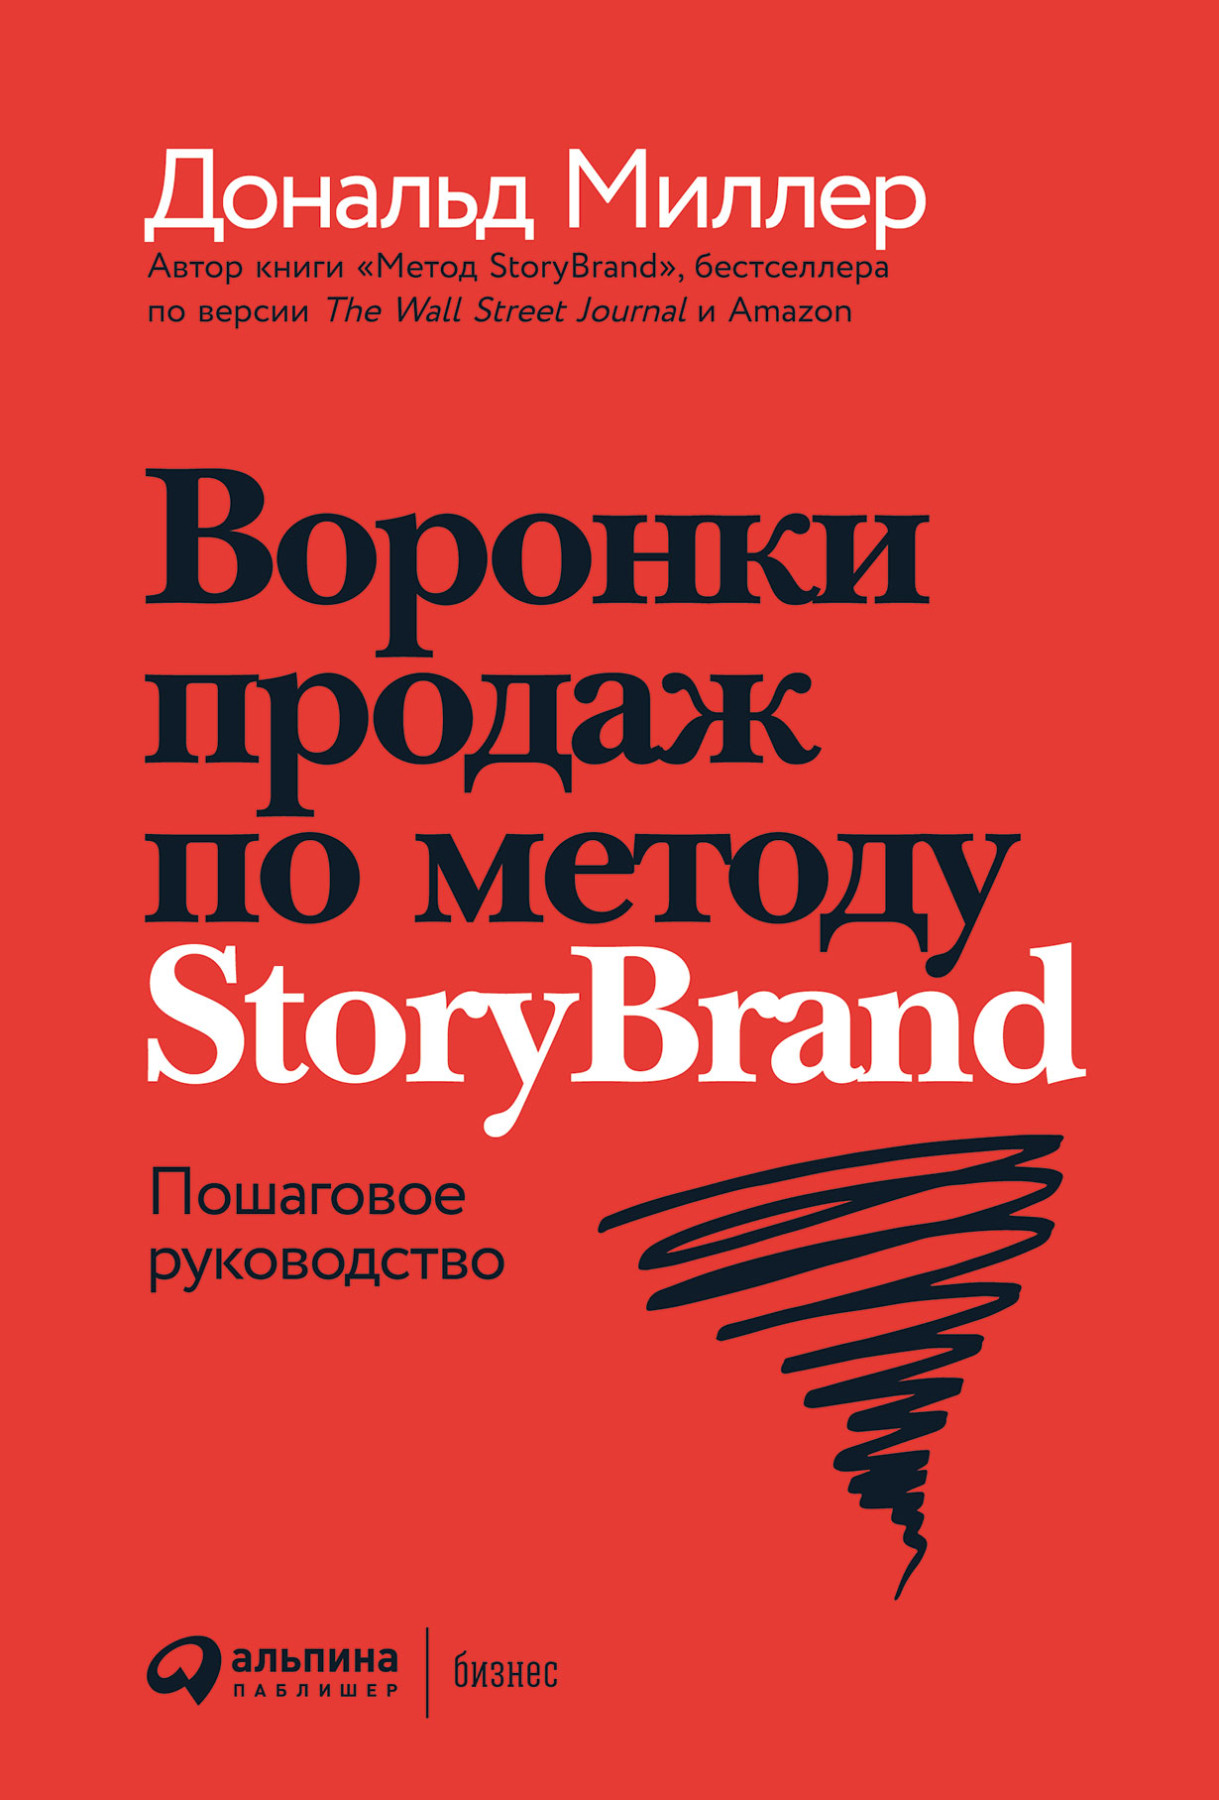 Воронки продаж по методу StoryBrand обложка.